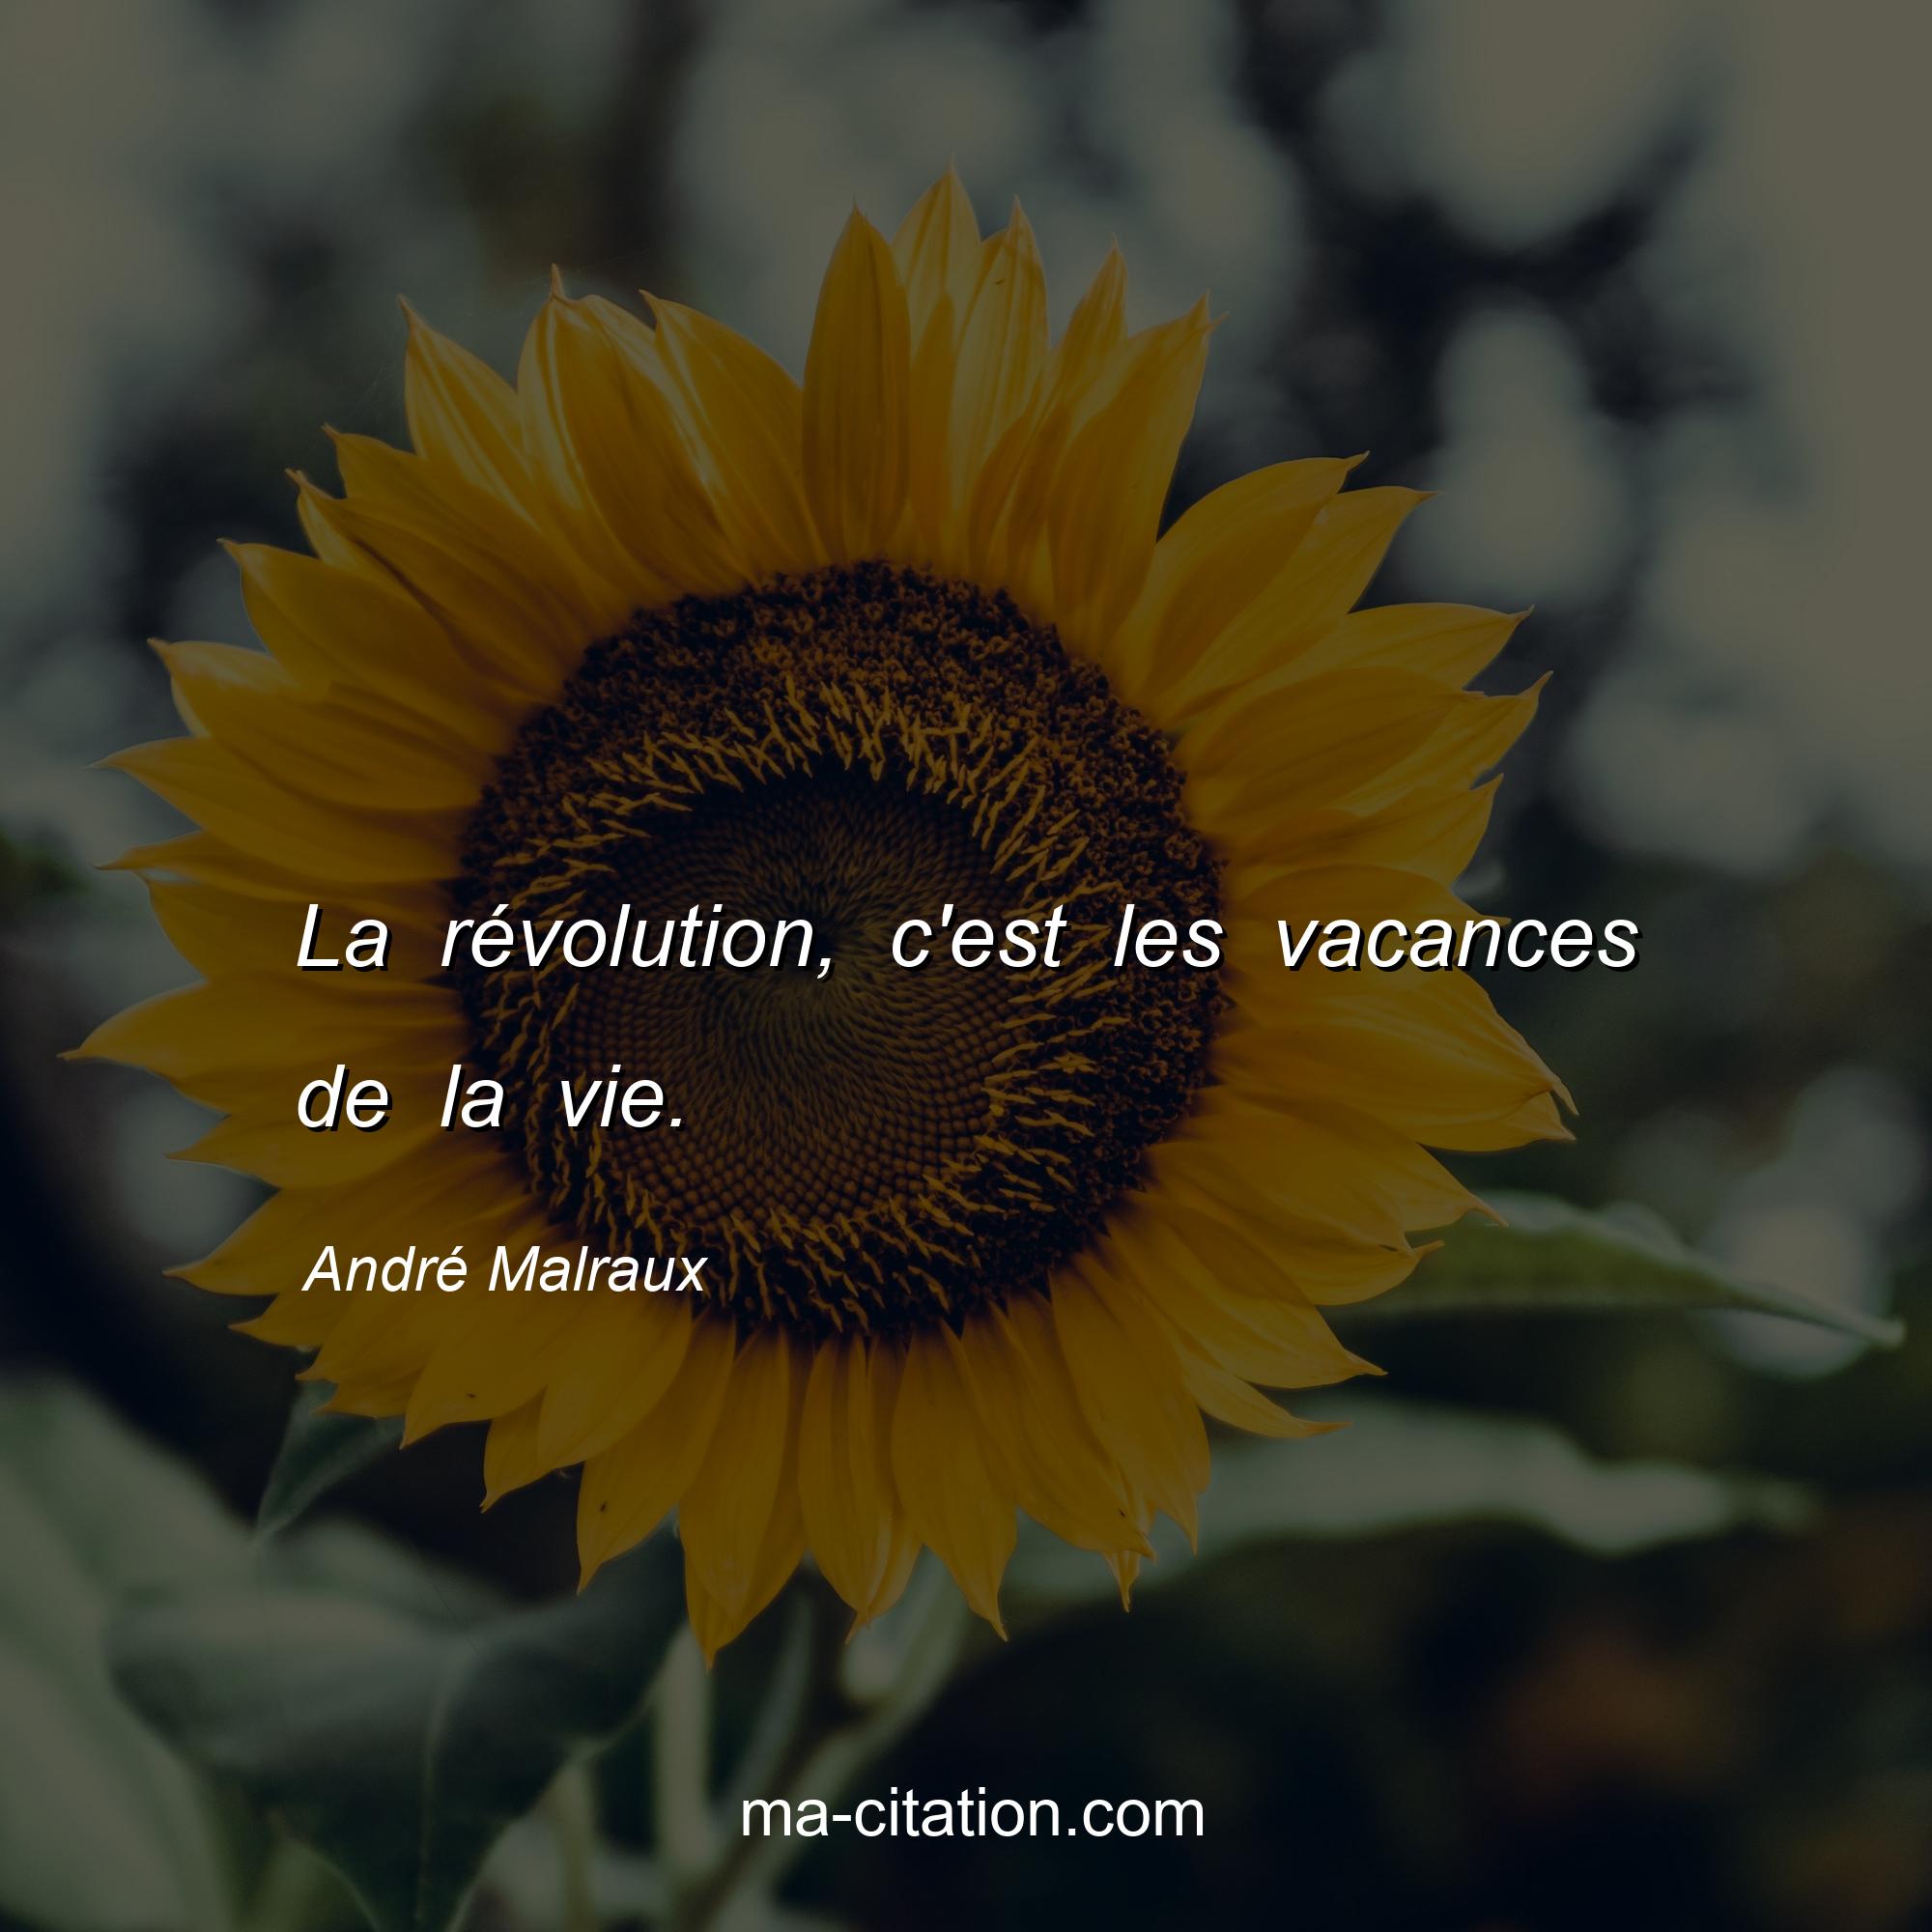 André Malraux : La révolution, c'est les vacances de la vie.